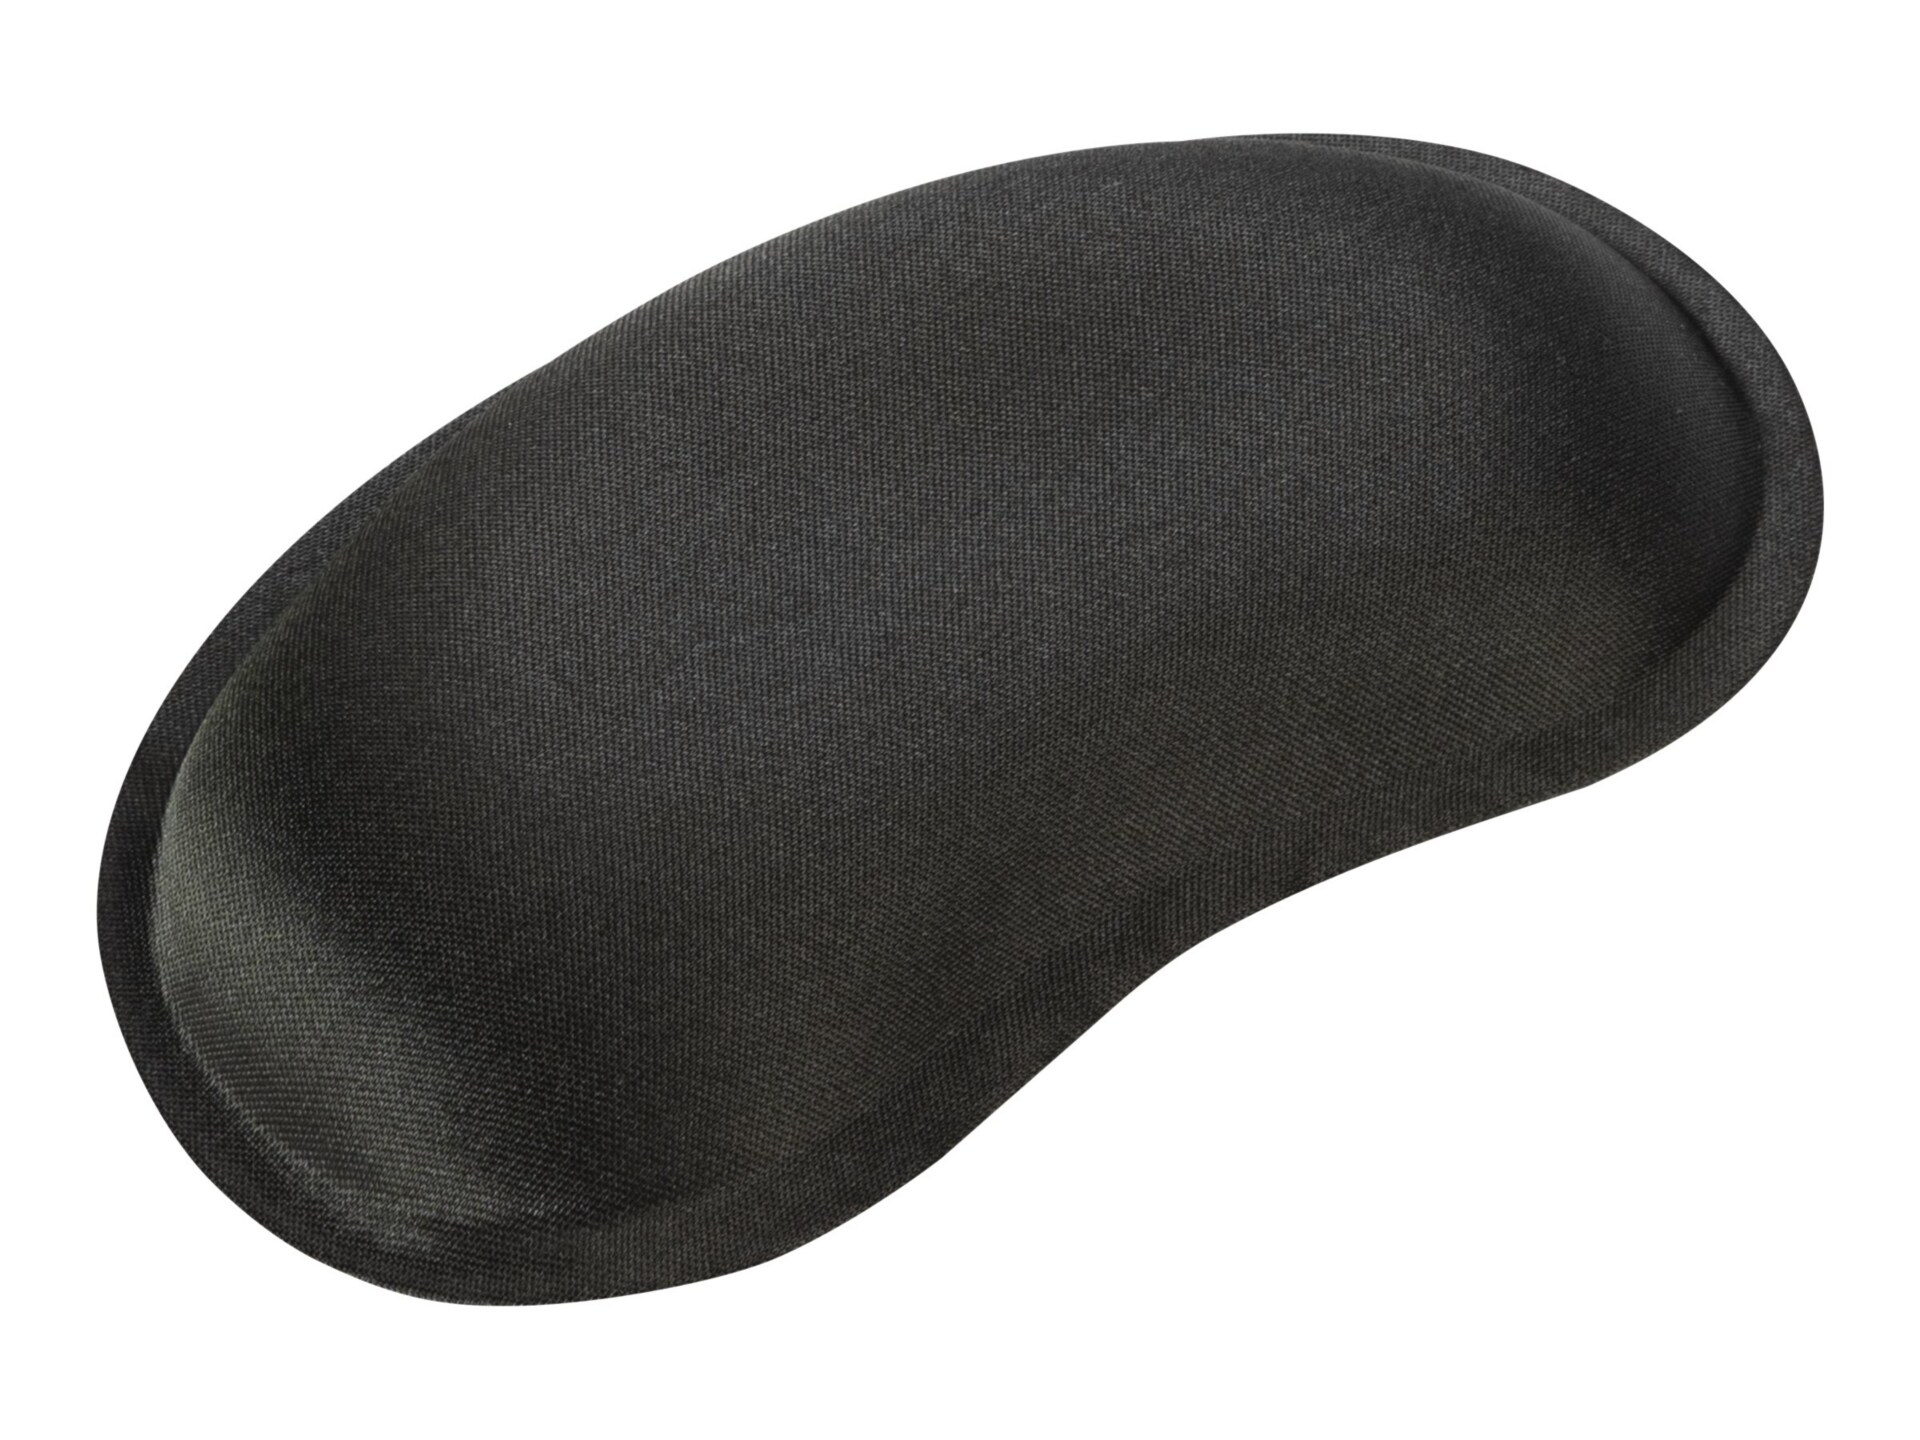 Belkin F8e244-blk WaveRest Gel Wrist Pad - Black